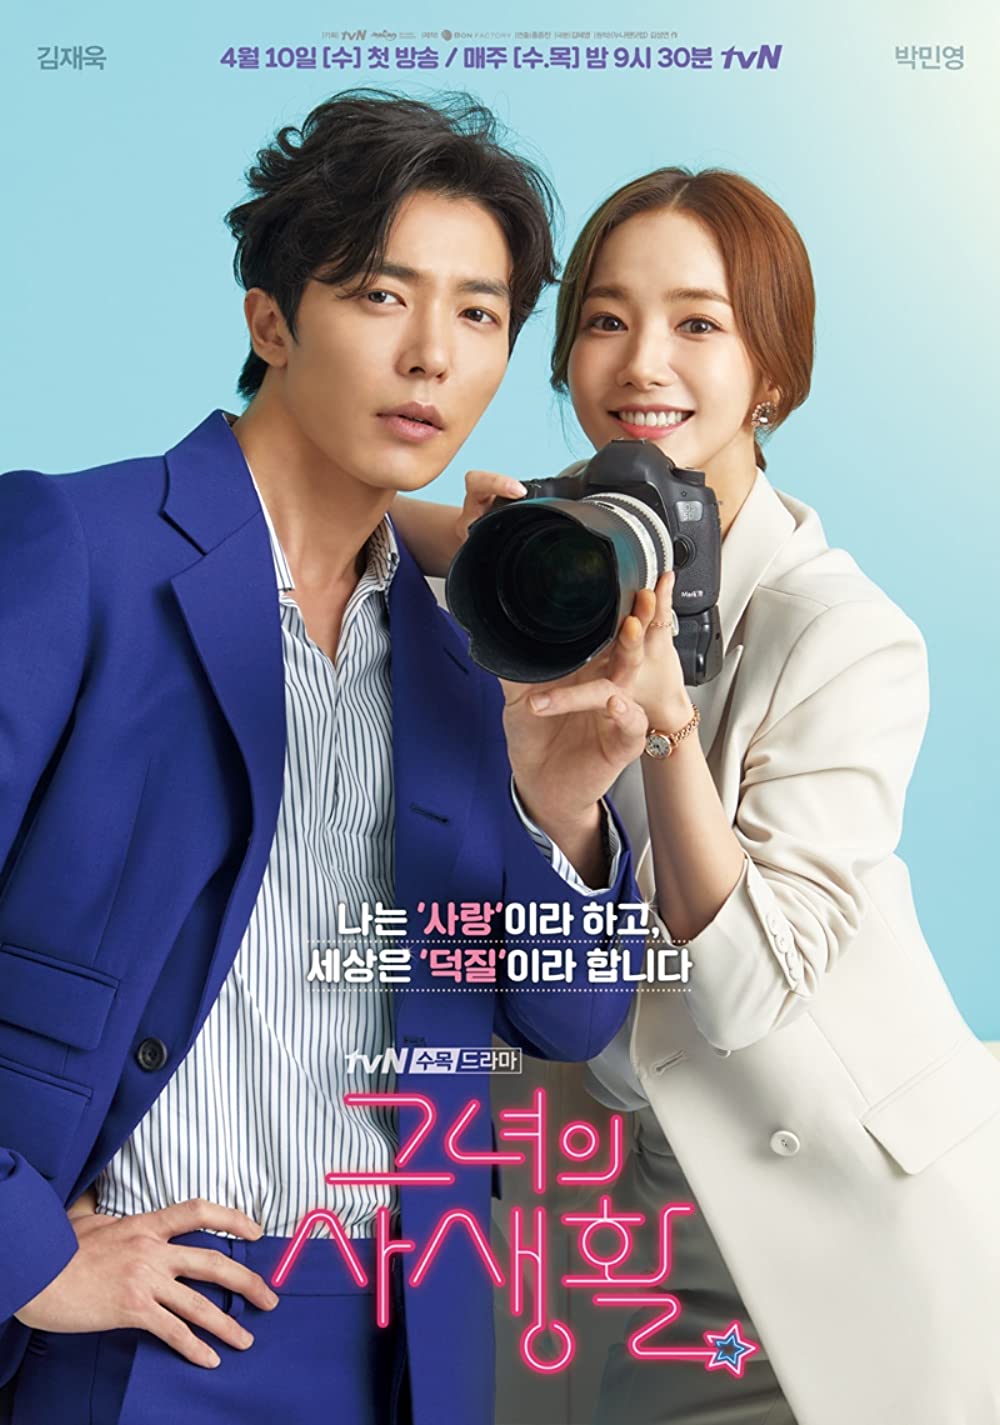 11 Judul drama Korea romantis paling dicari dan rating tinggi